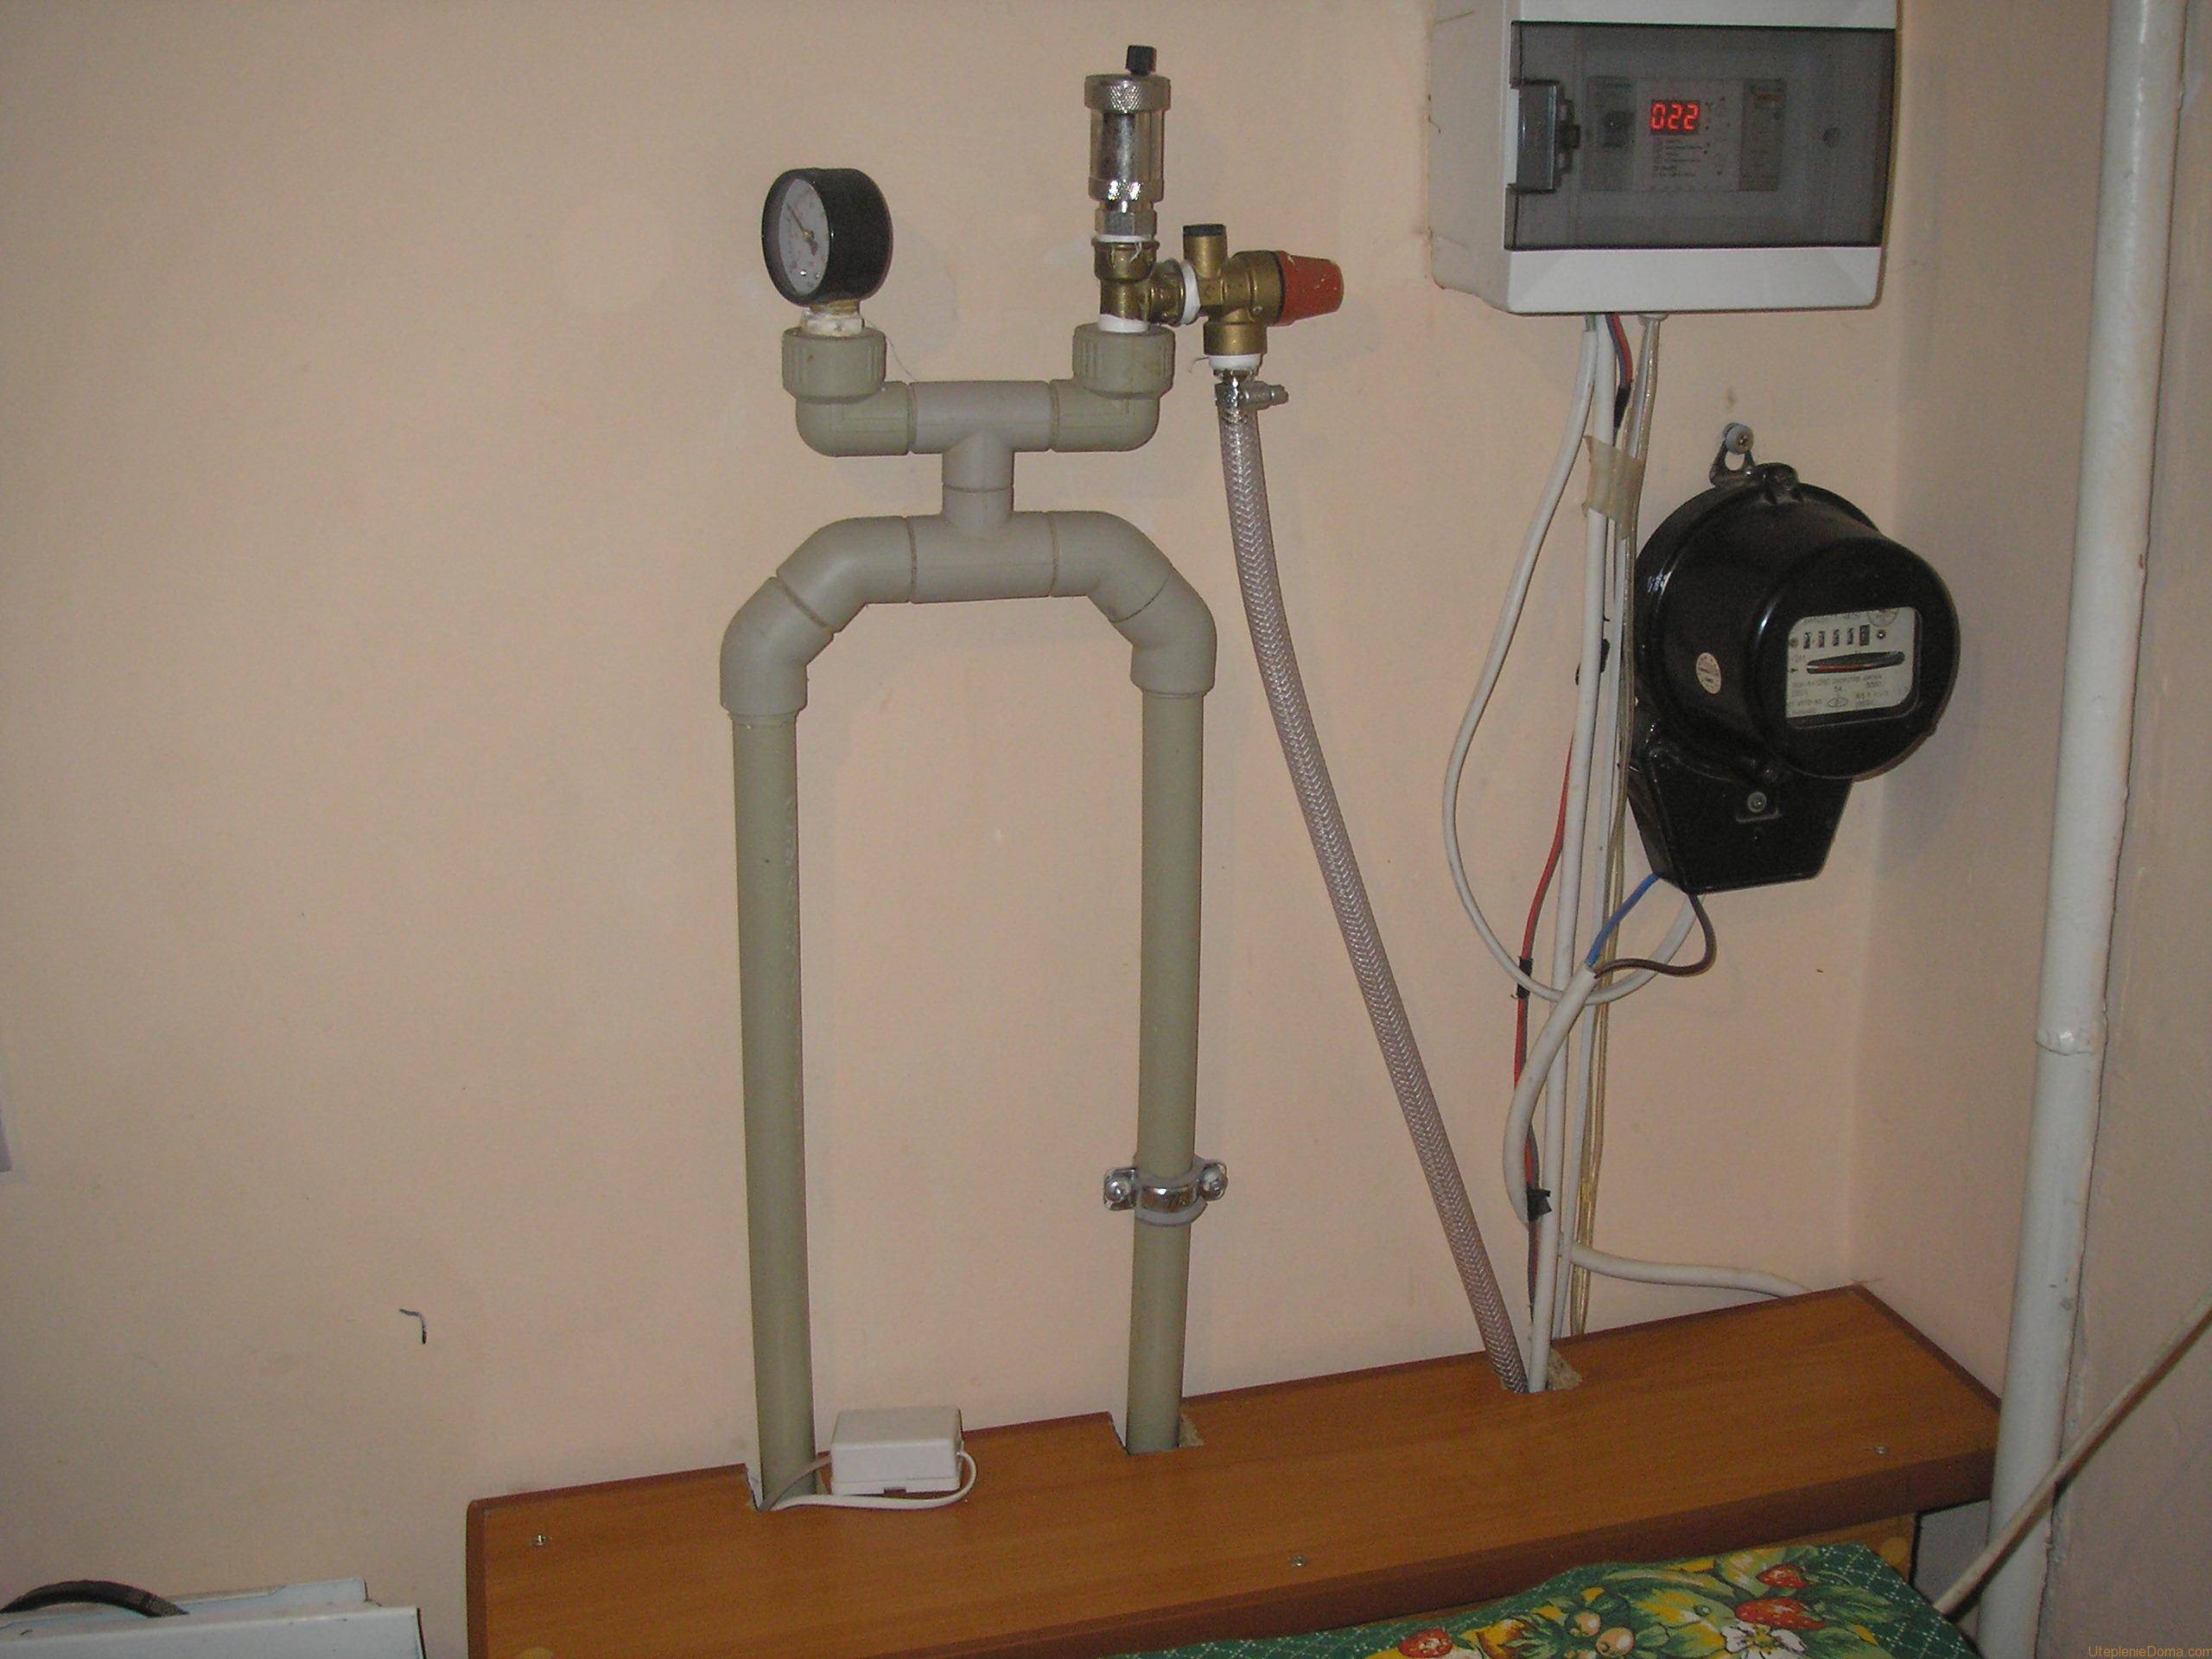 Индукционный котел отопления своими руками: схема отопления индукционным котлом для частного дома